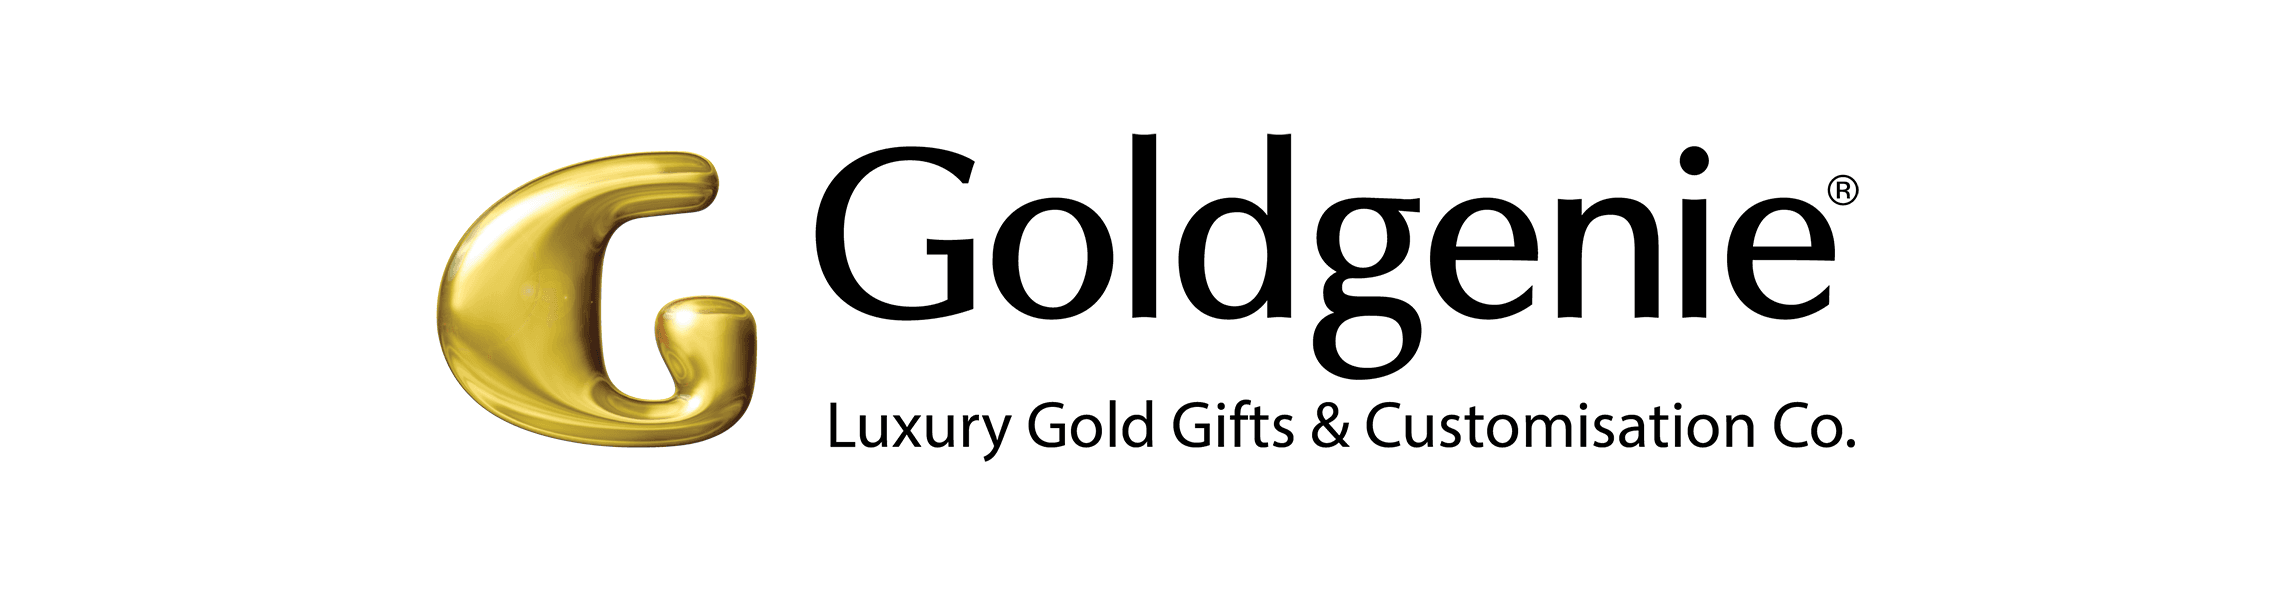 Goldgenie banner